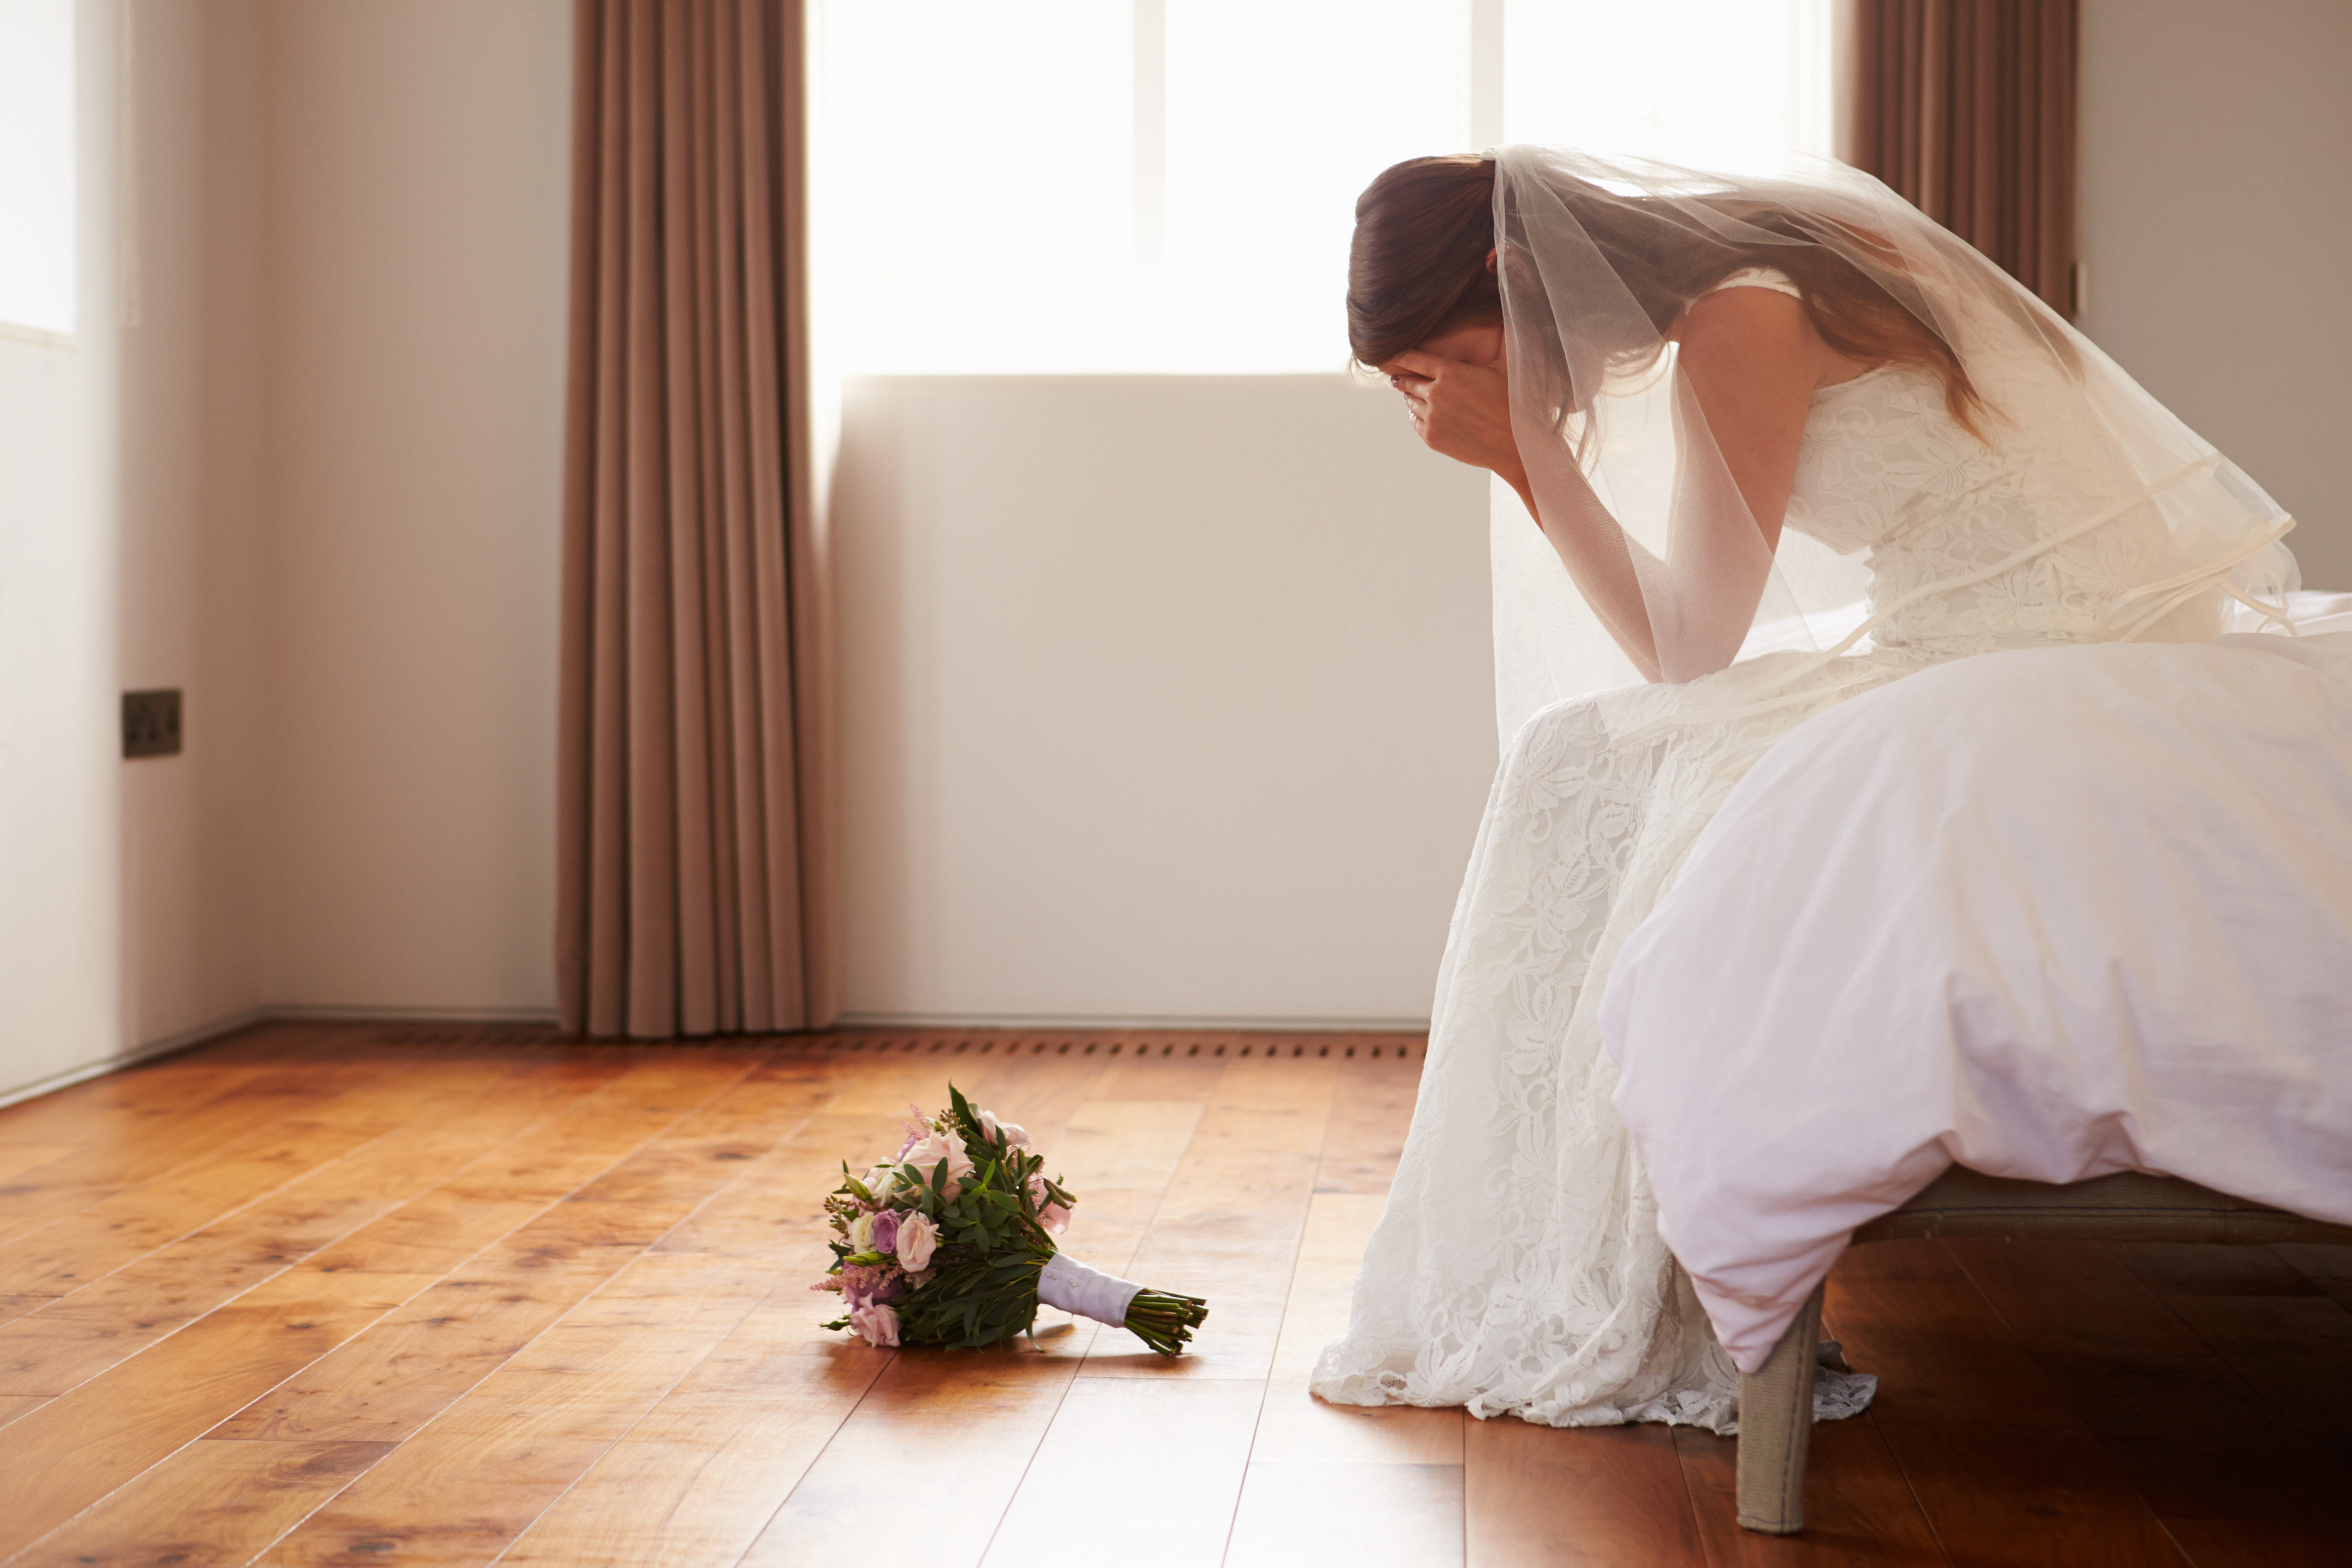 Una novia triste sentada en una habitación | Fuente: Shutterstock